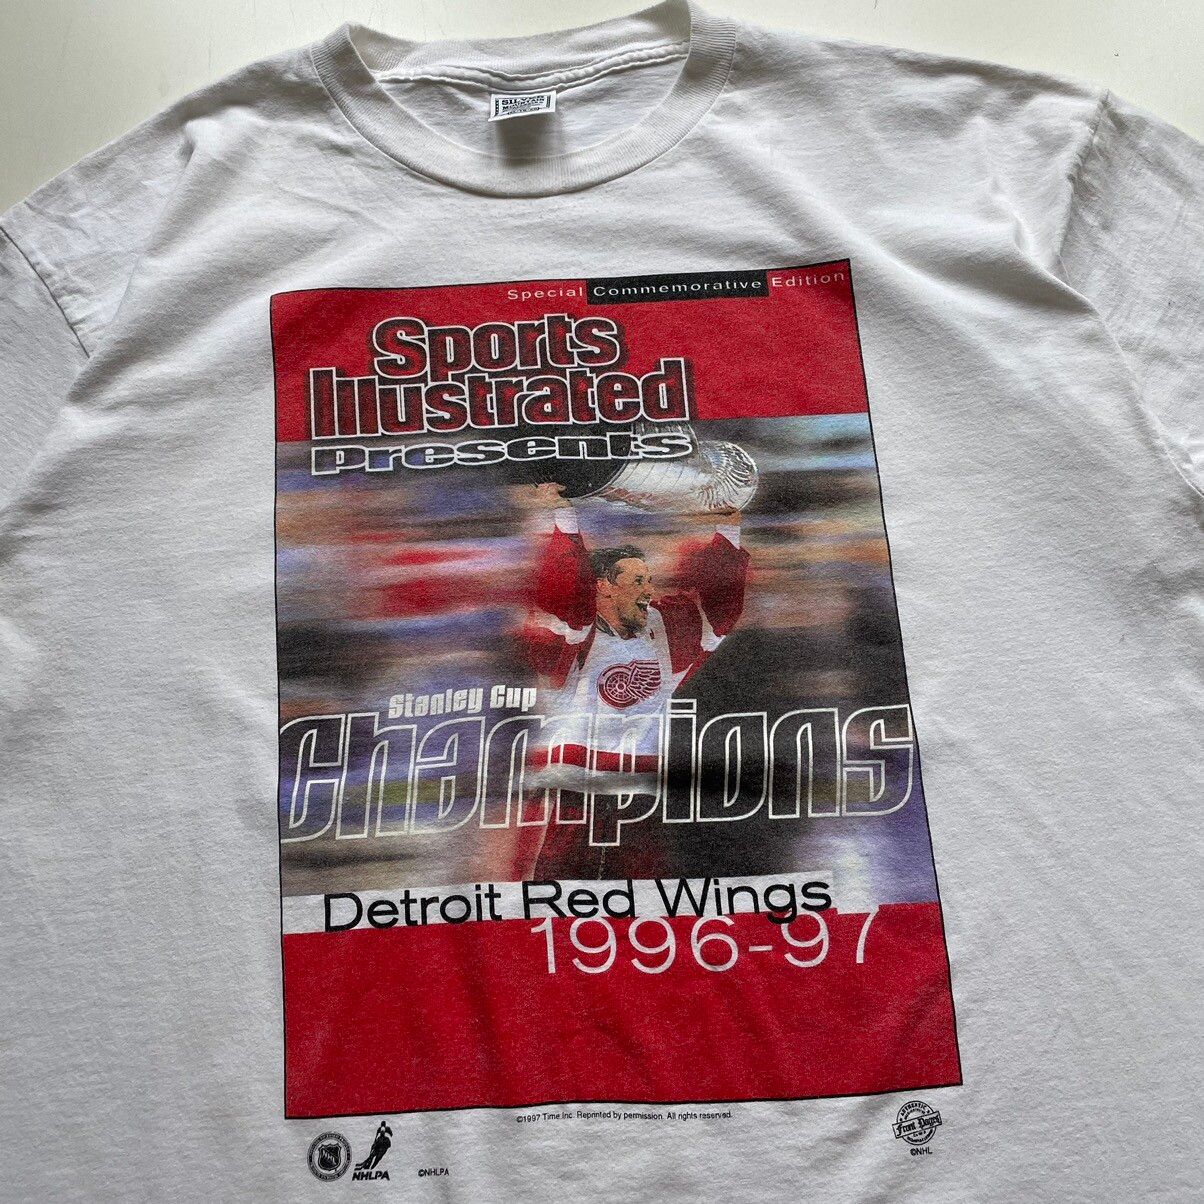 Vintage Vintage 90s Detroit Redwings Stanley Cup Champions T shirt Size US XL / EU 56 / 4 - 2 Preview